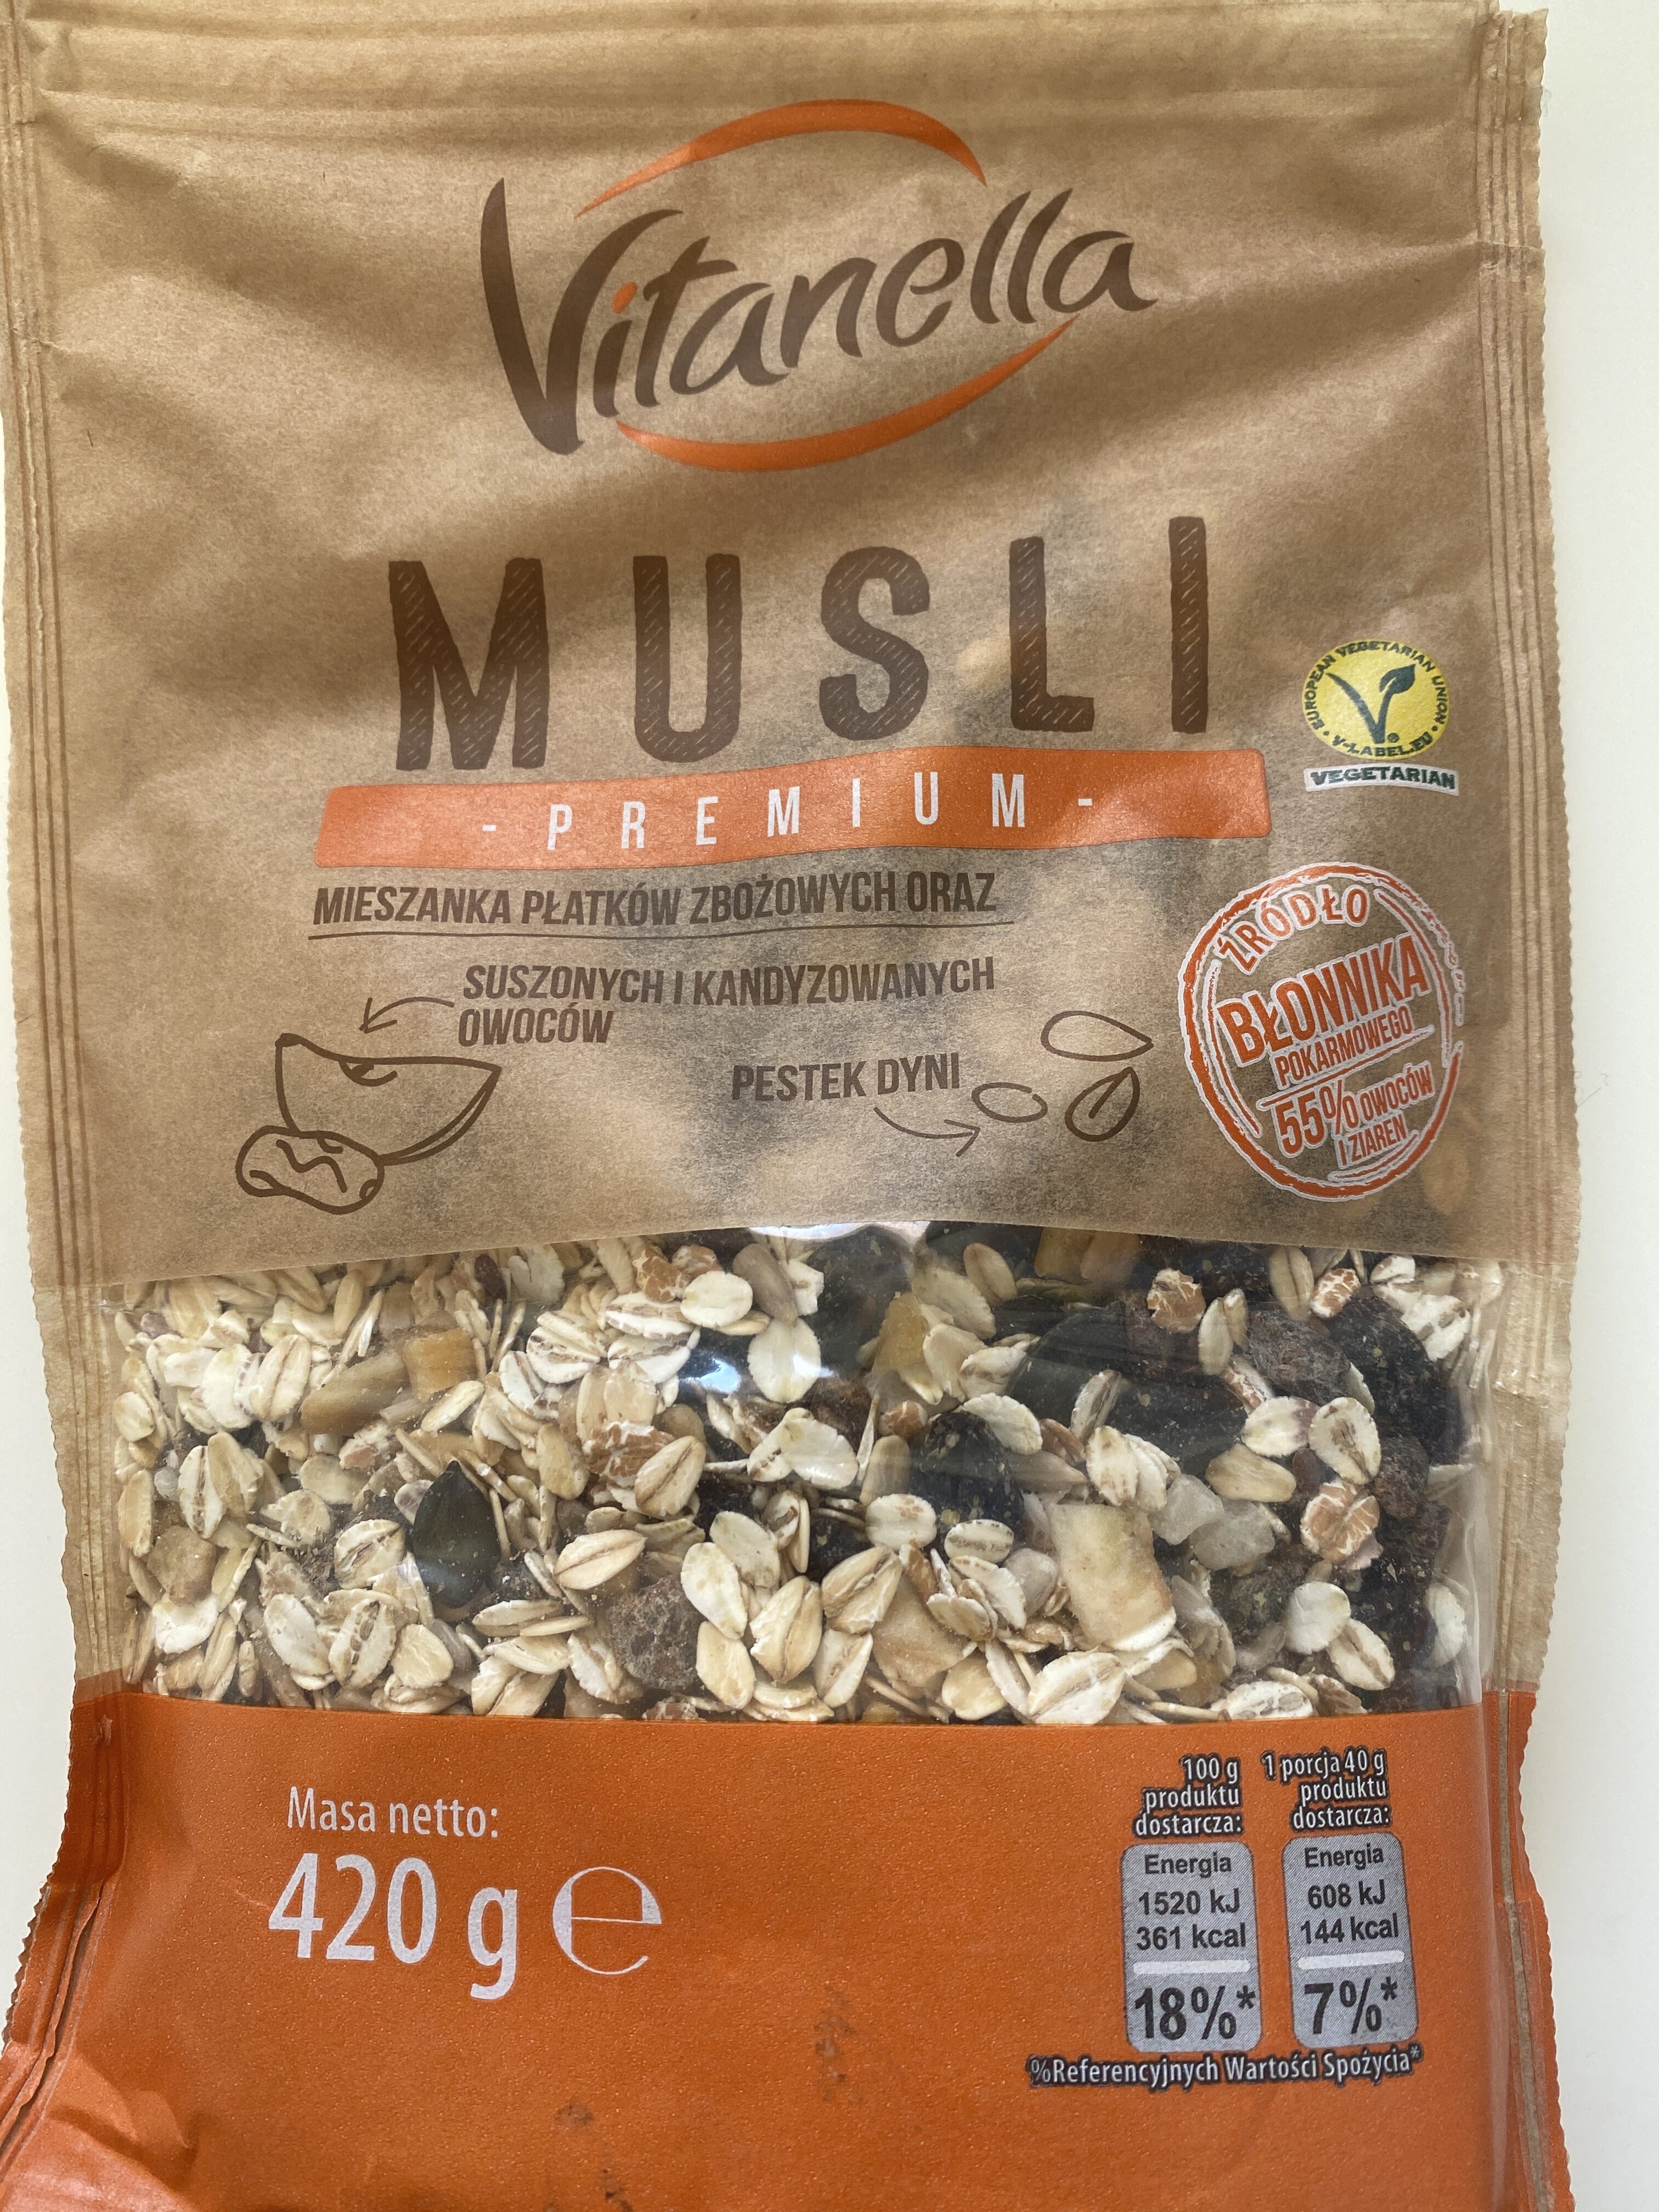 Musli premium - Product - pl